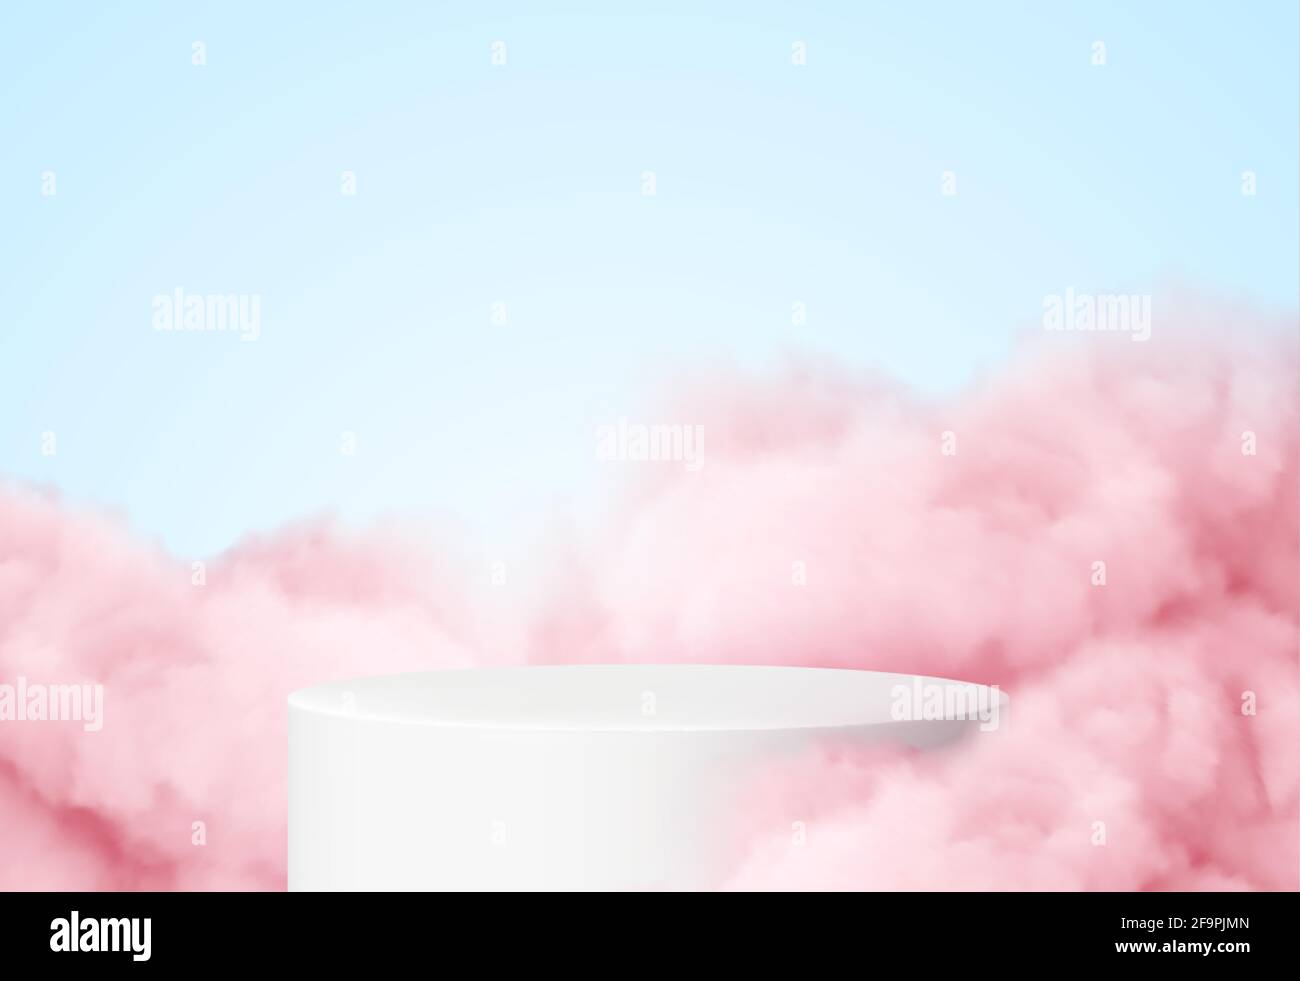 Fondo azul con un podio de productos rodeado de nubes rosadas. Humo, niebla, fondo de vapor. Ilustración vectorial Ilustración del Vector